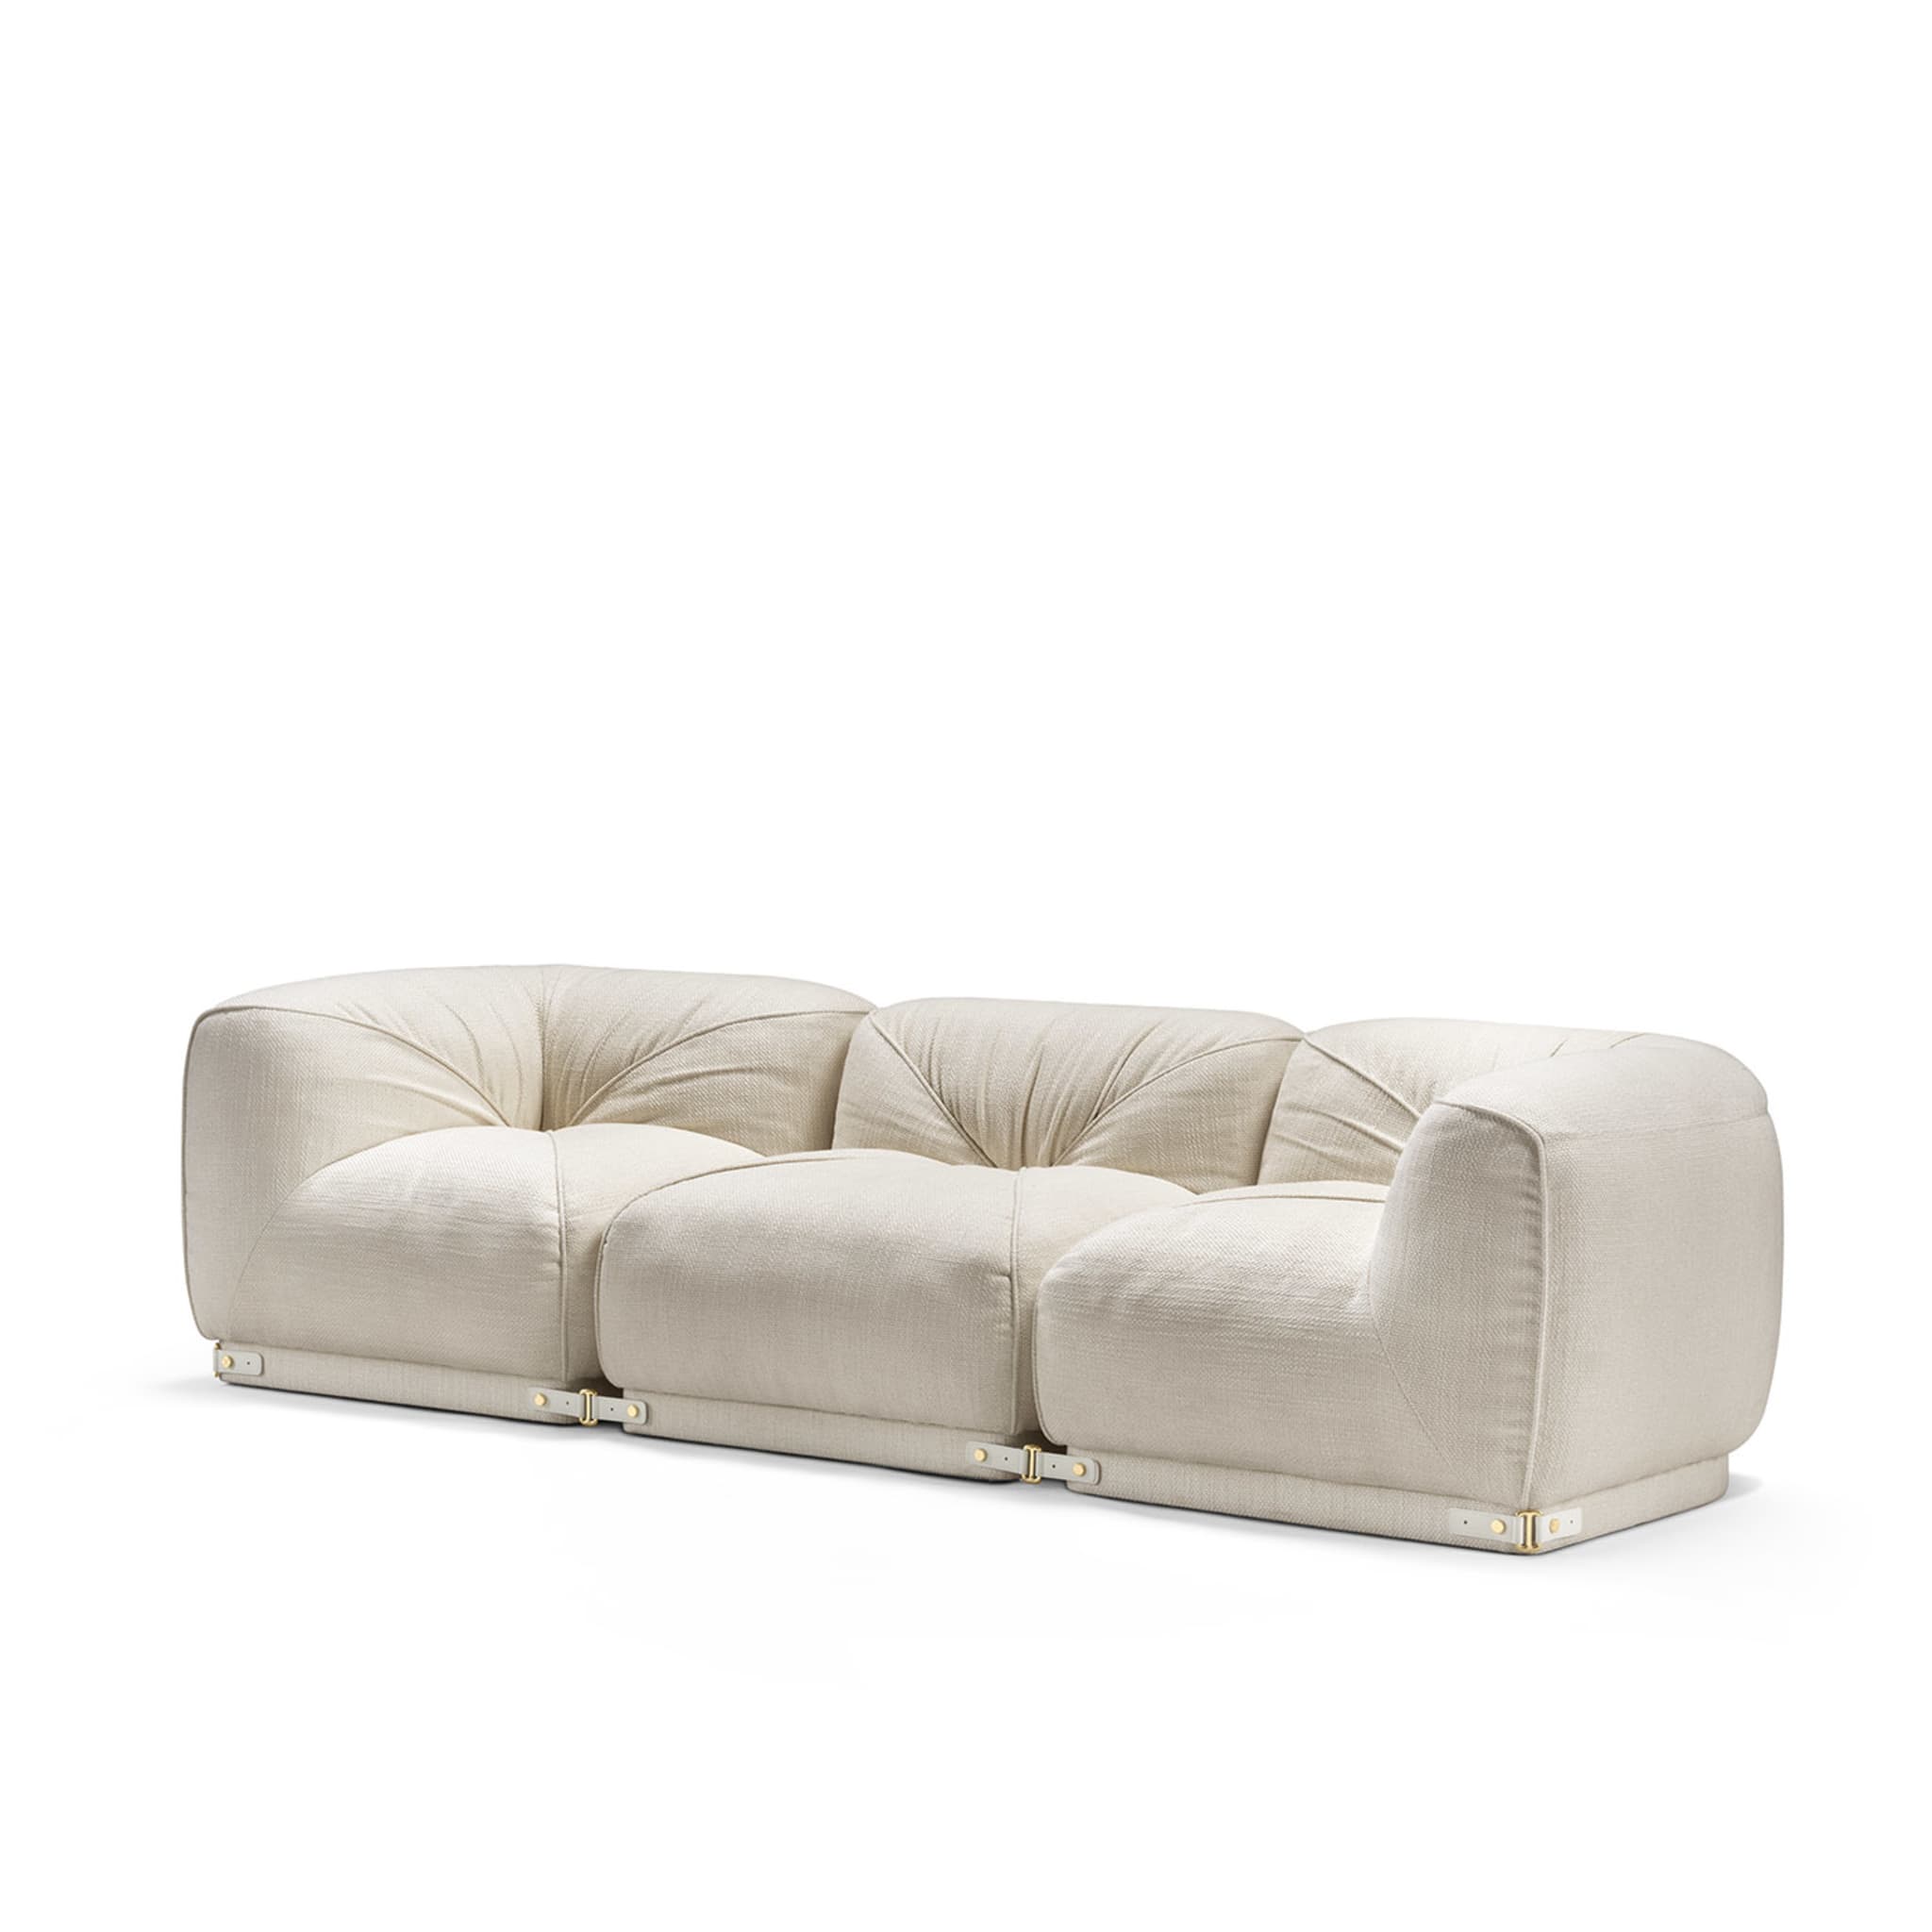 Leisure 3-sitzer weißes sofa by Lorenza Bozzoli - Alternative Ansicht 2